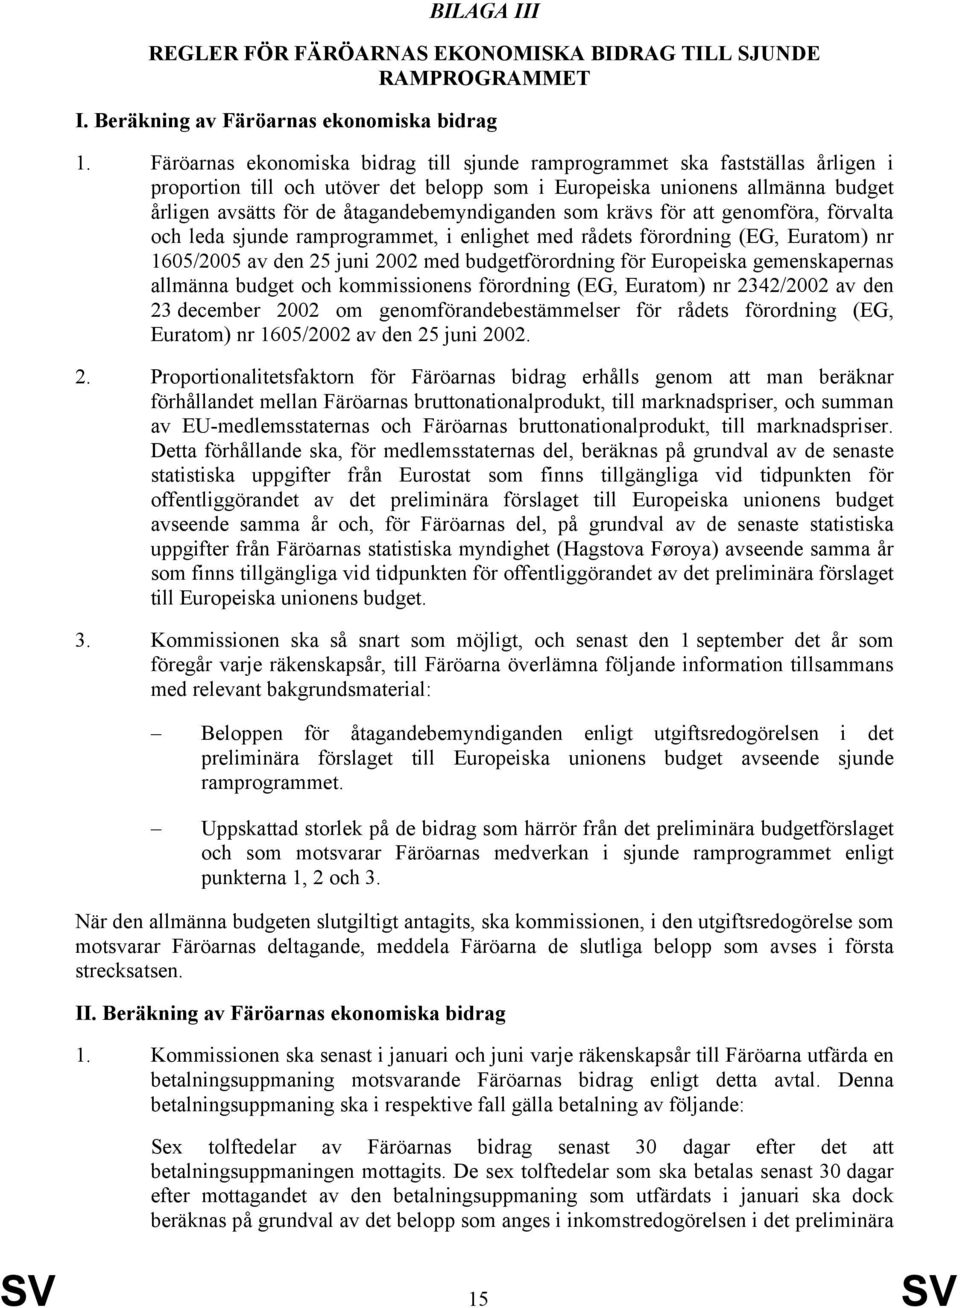 åtagandebemyndiganden som krävs för att genomföra, förvalta och leda sjunde ramprogrammet, i enlighet med rådets förordning (EG, Euratom) nr 1605/2005 av den 25 juni 2002 med budgetförordning för